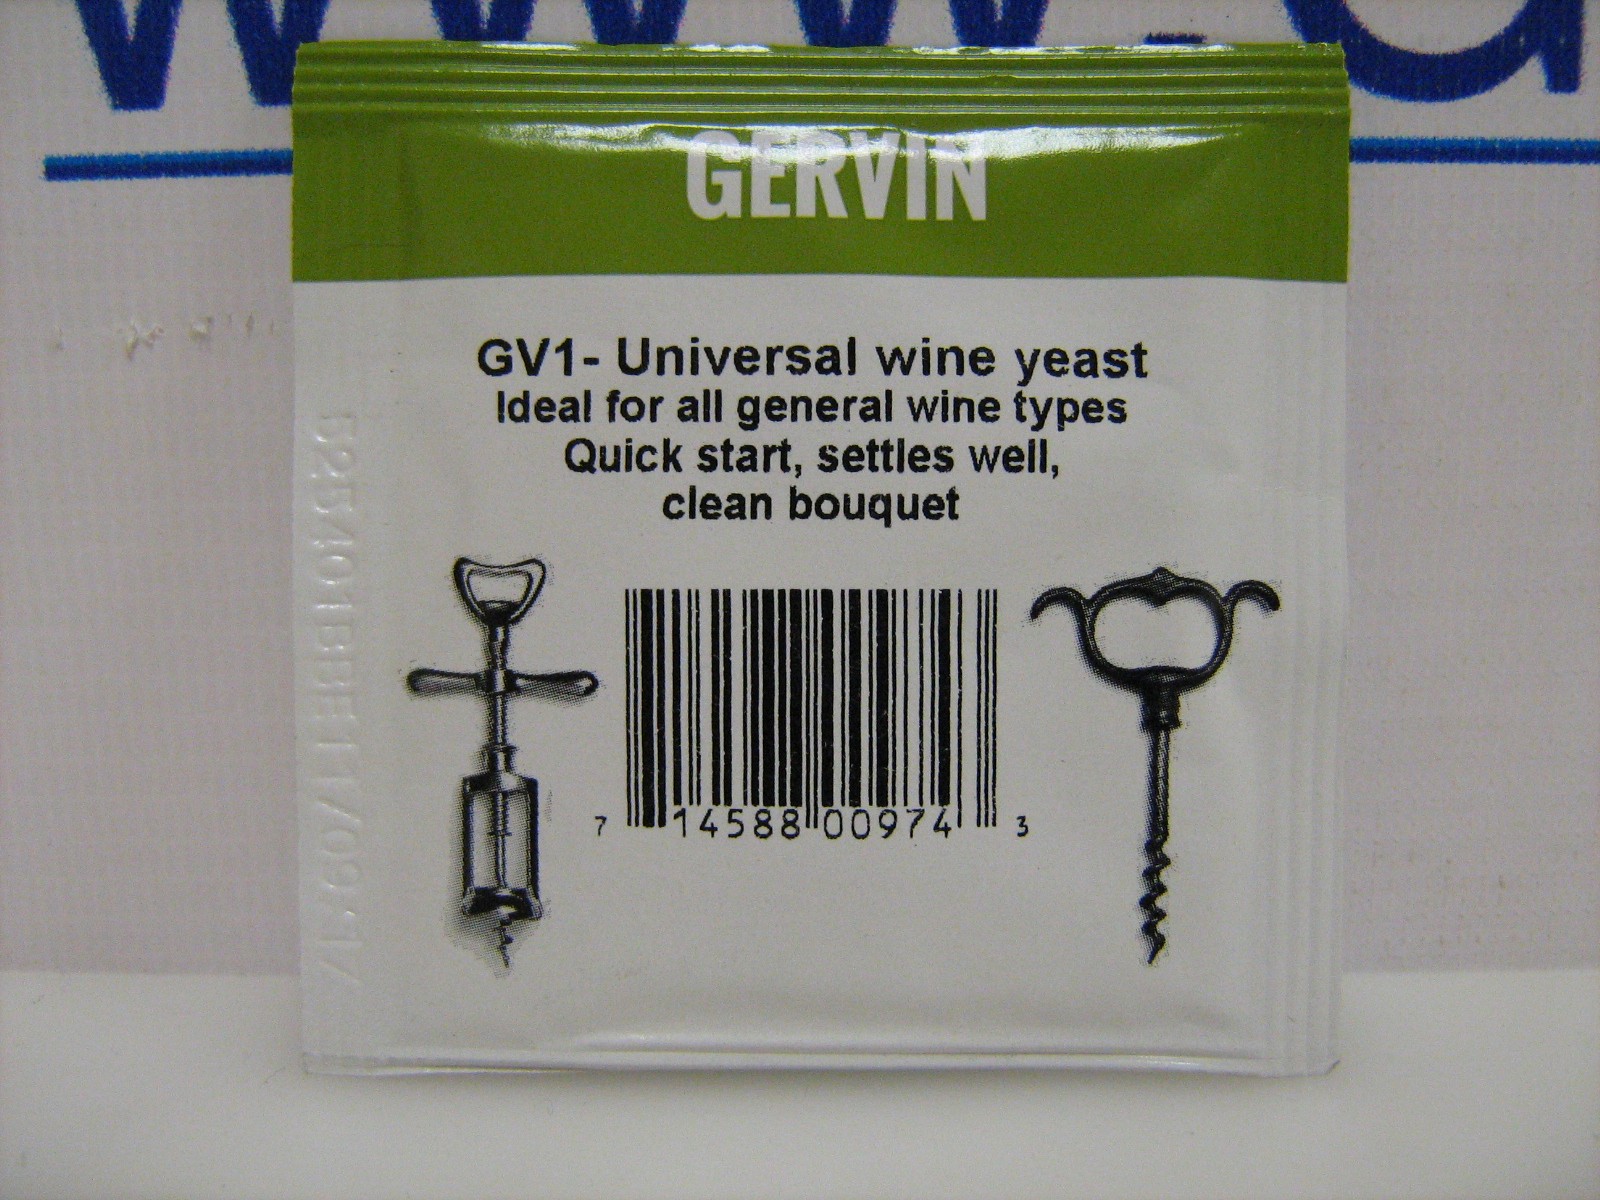 Дрожжи винные Gervin GV1 Universal